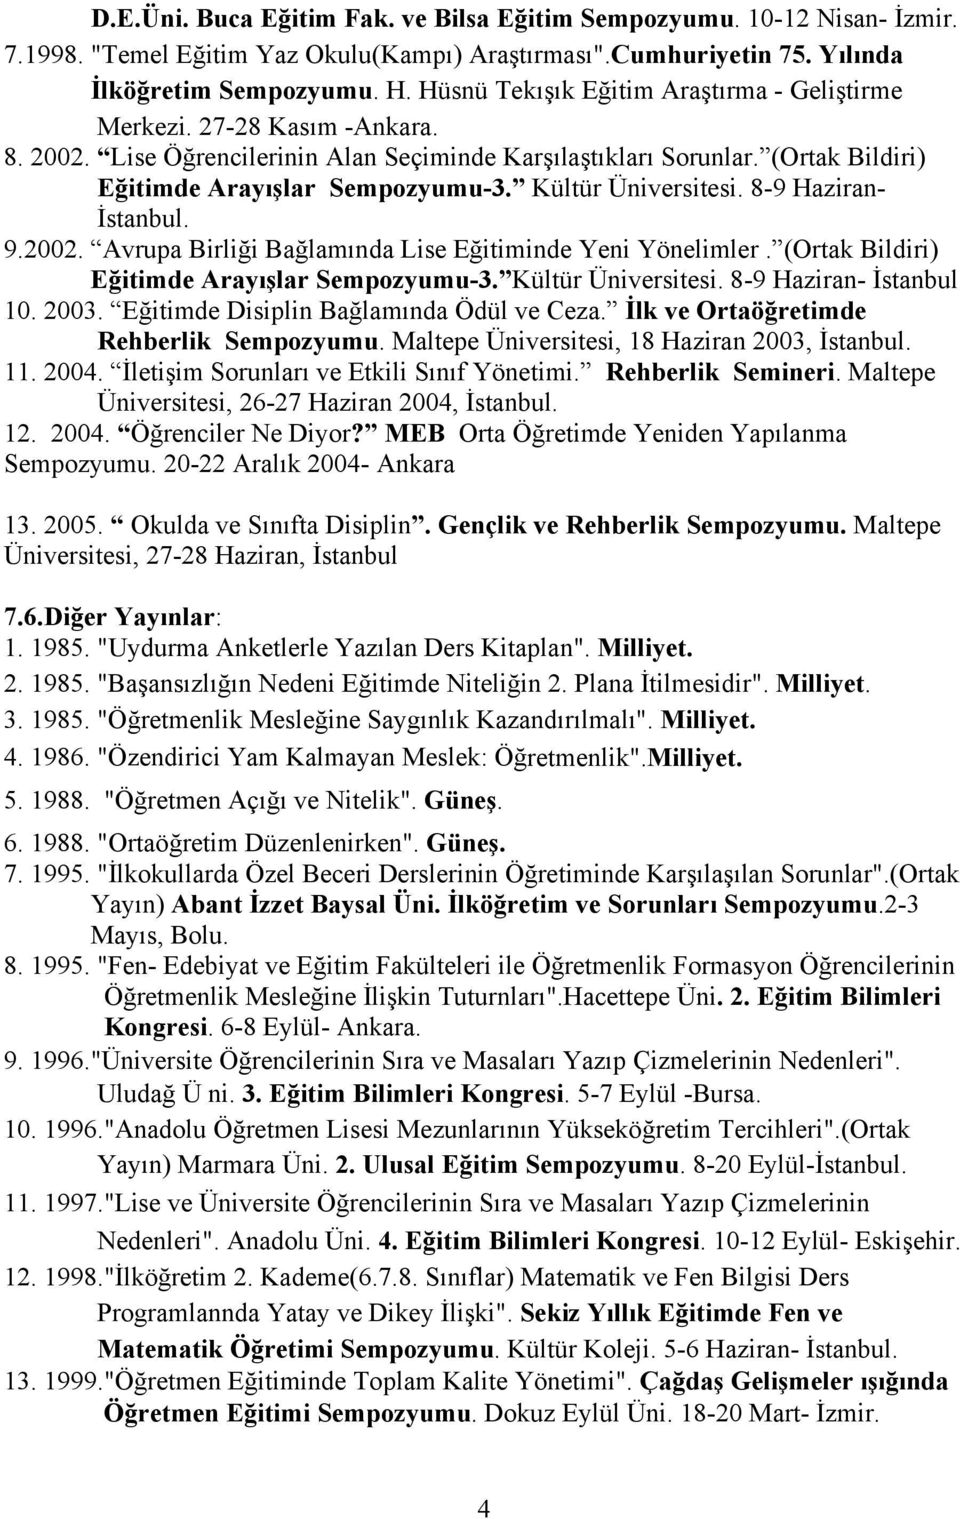 Kültür Üniversitesi. 8-9 Haziran- İstanbul. 9.2002. Avrupa Birliği Bağlamında Lise Eğitiminde Yeni Yönelimler. (Ortak Bildiri) Eğitimde Arayışlar Sempozyumu-3. Kültür Üniversitesi.